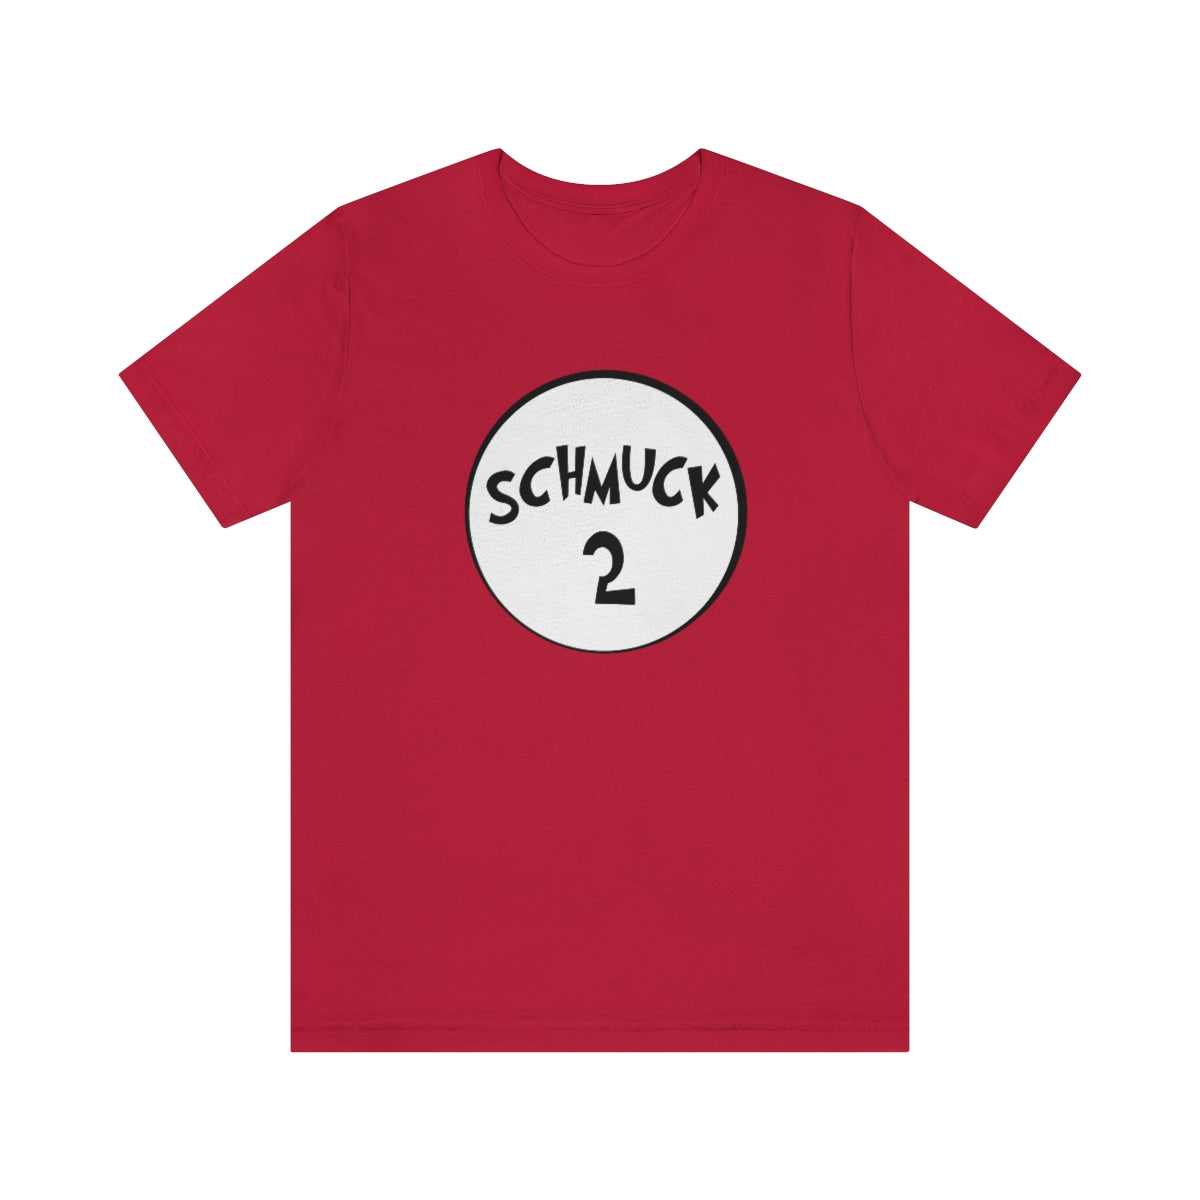 Schmuck 2 T-Shirt